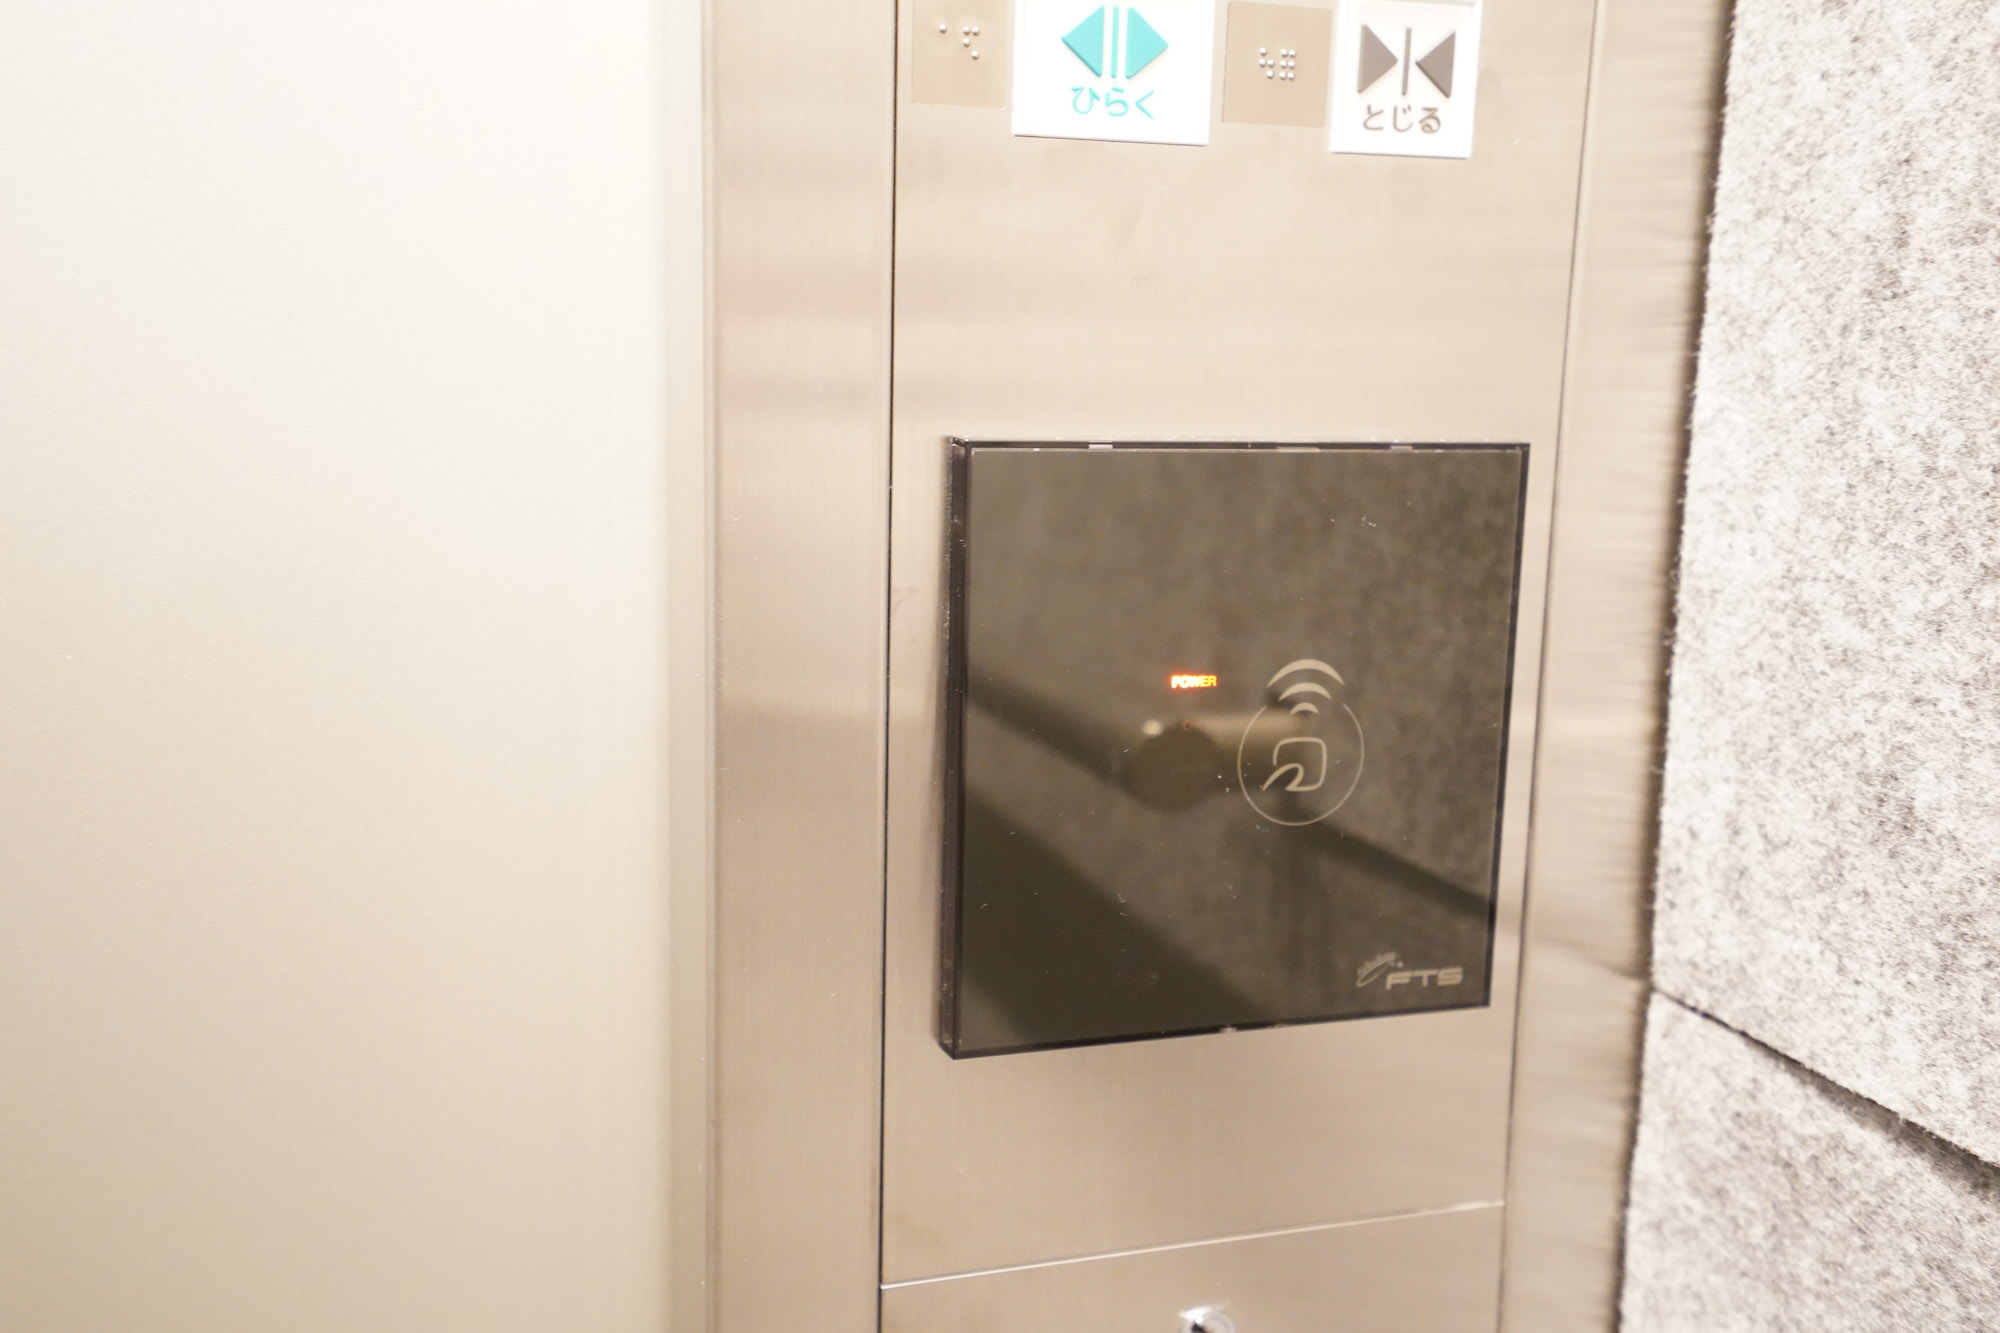 さらに、エレベーターの停止階も制御されているというホテル並みのセキュリティの高さです。共用部のオートロックと共通のICチップ内蔵キーをかざすと、自分のフロアにのみエレベーターが止まる仕組み。